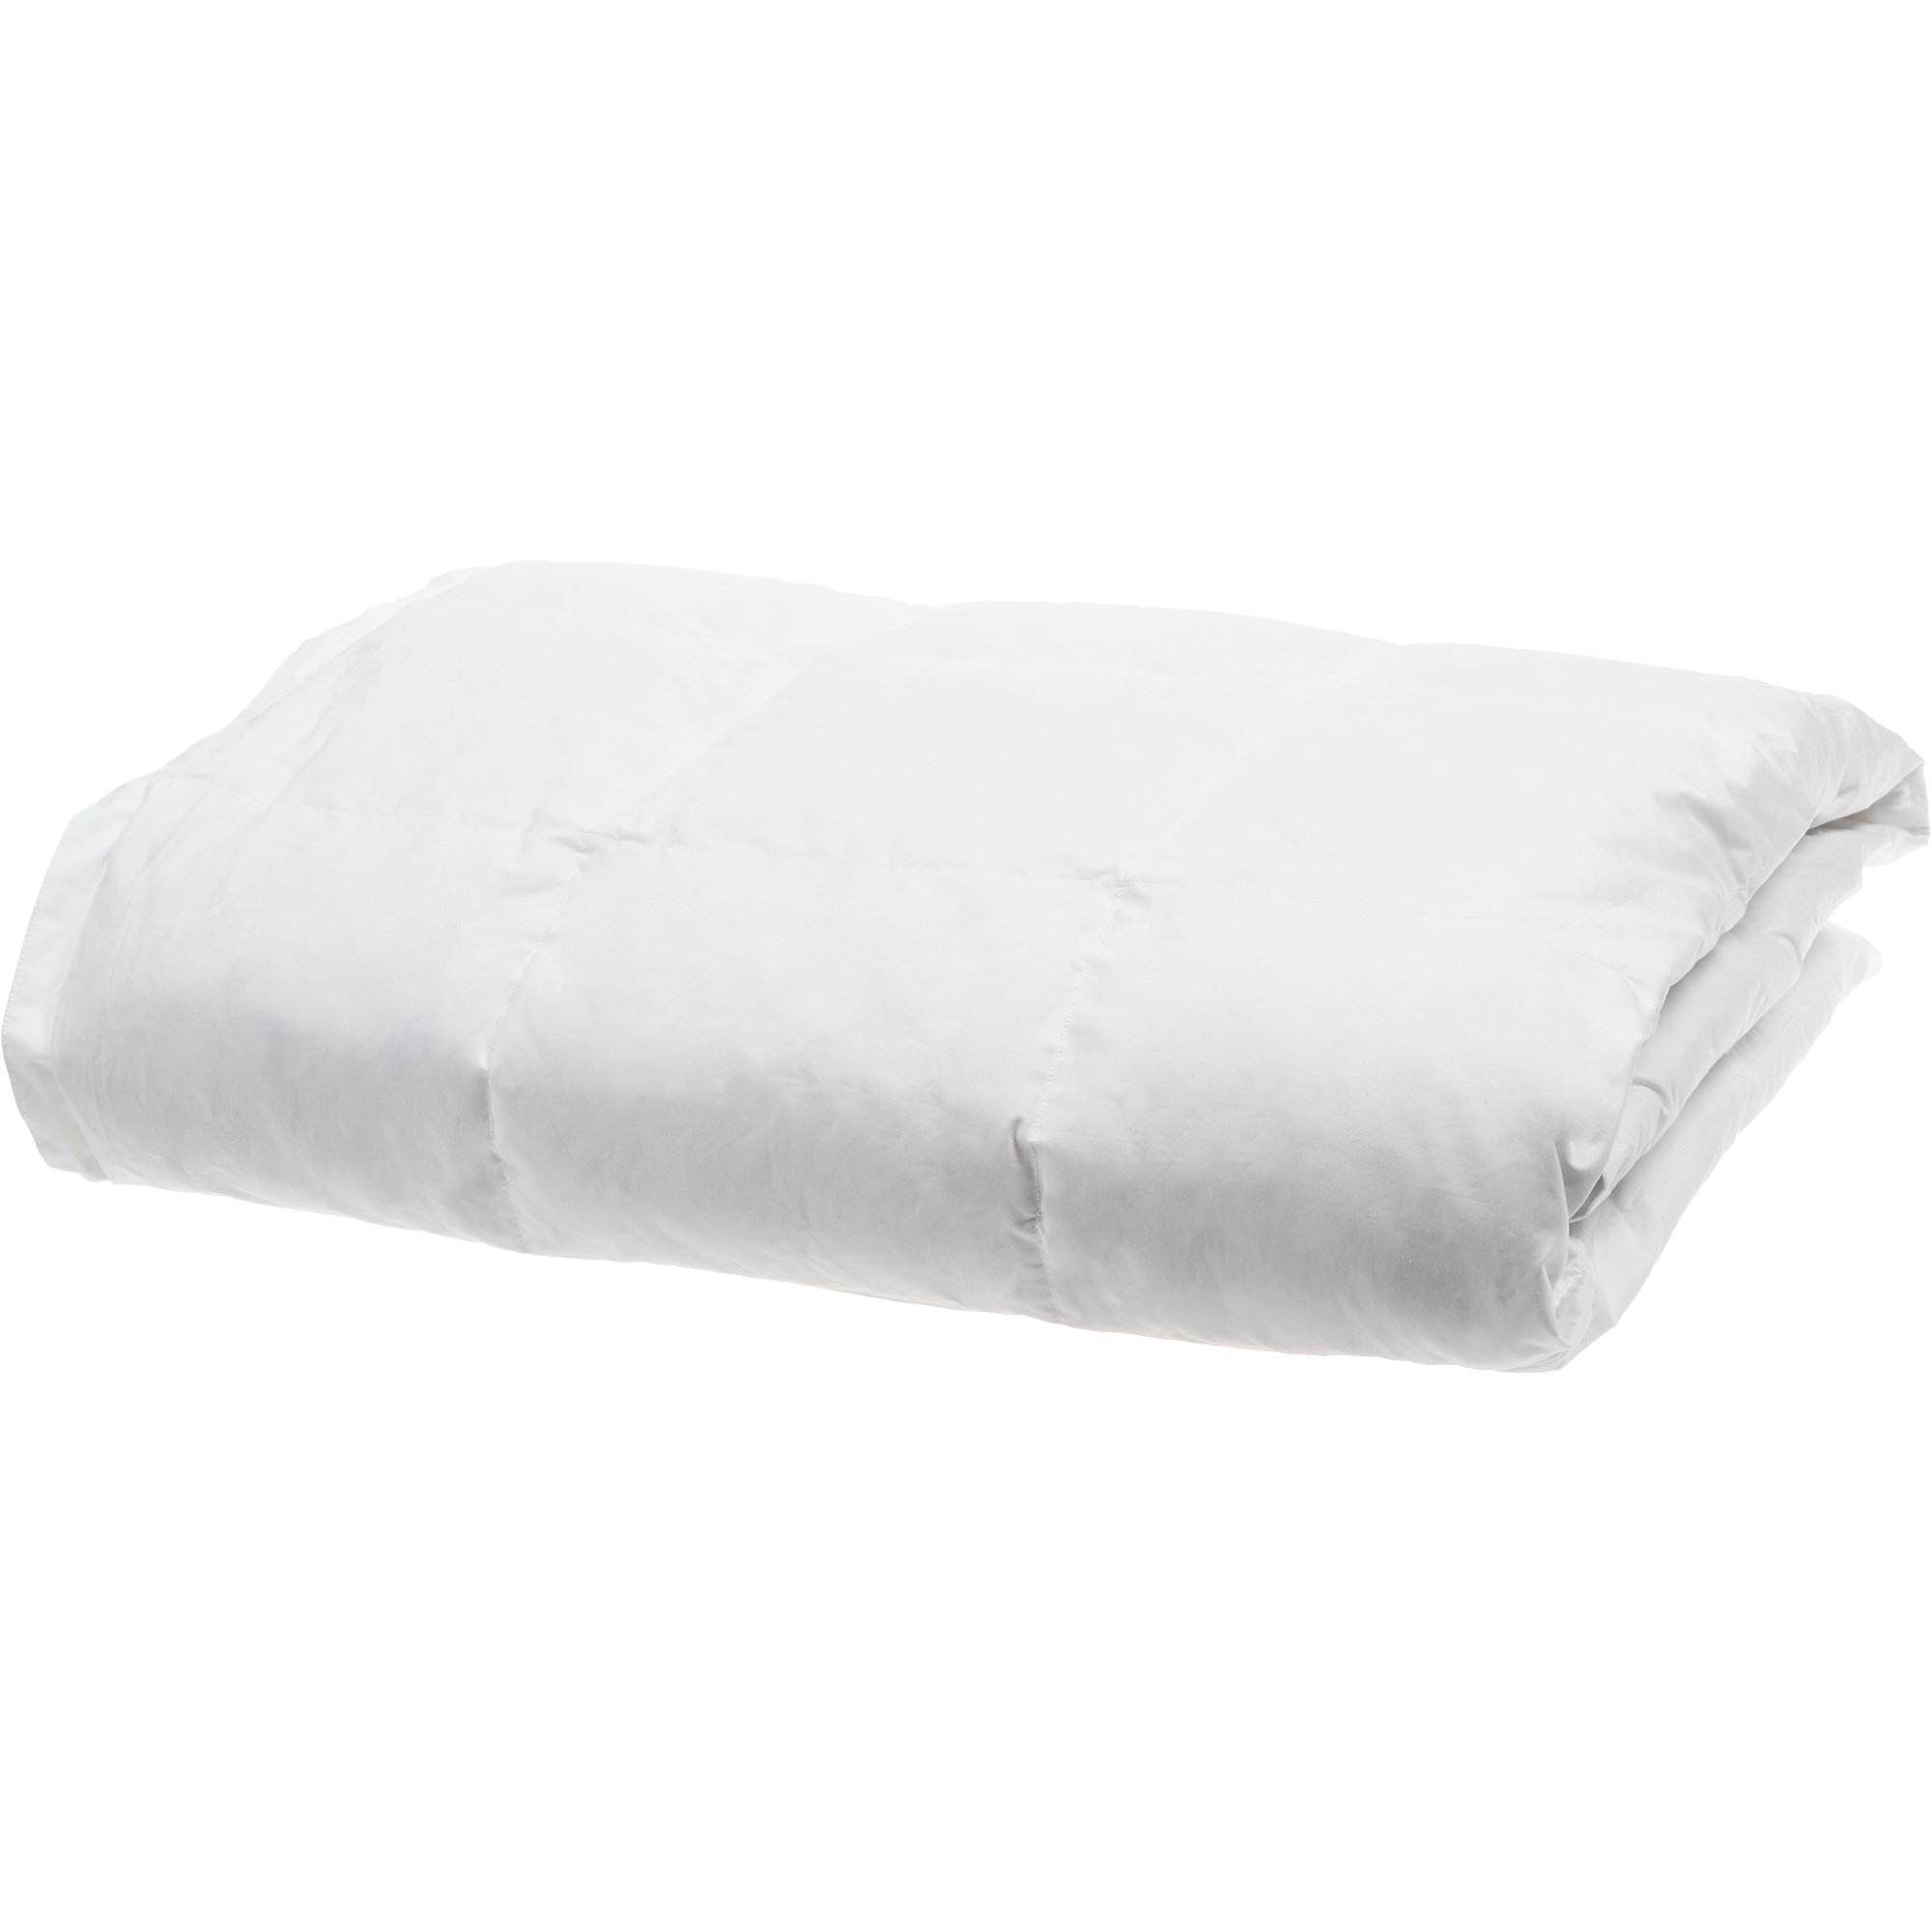 Одеяло Daunex Badia Light белое 140х200 см, цвет белый - фото 1